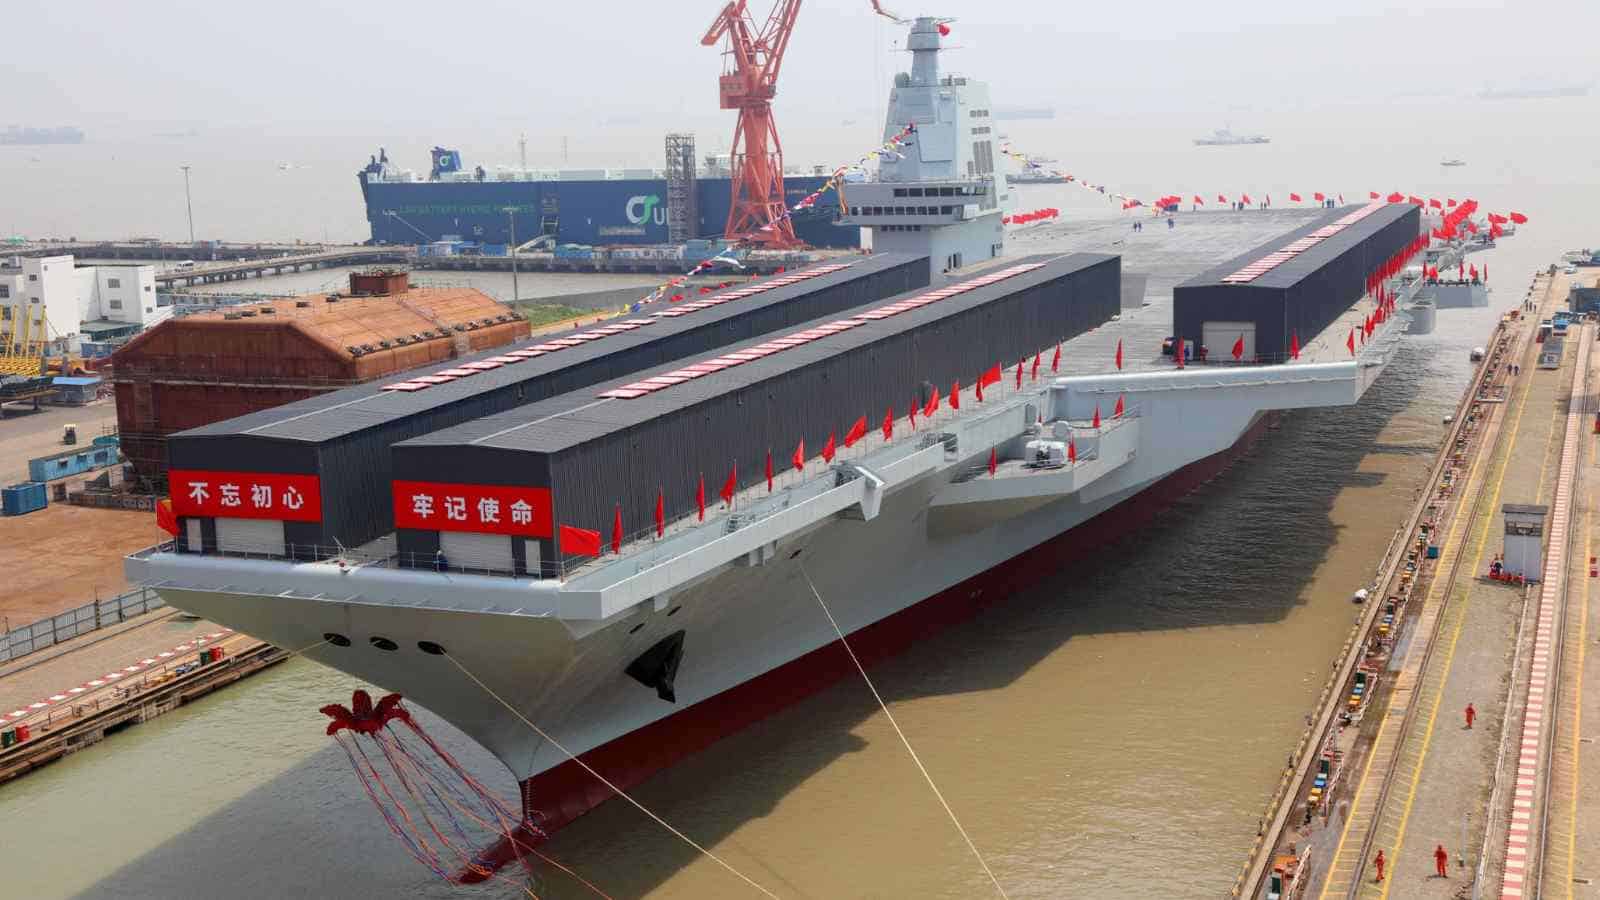 La Fujian della flotta navale cinese  in tutta la sua grandezza